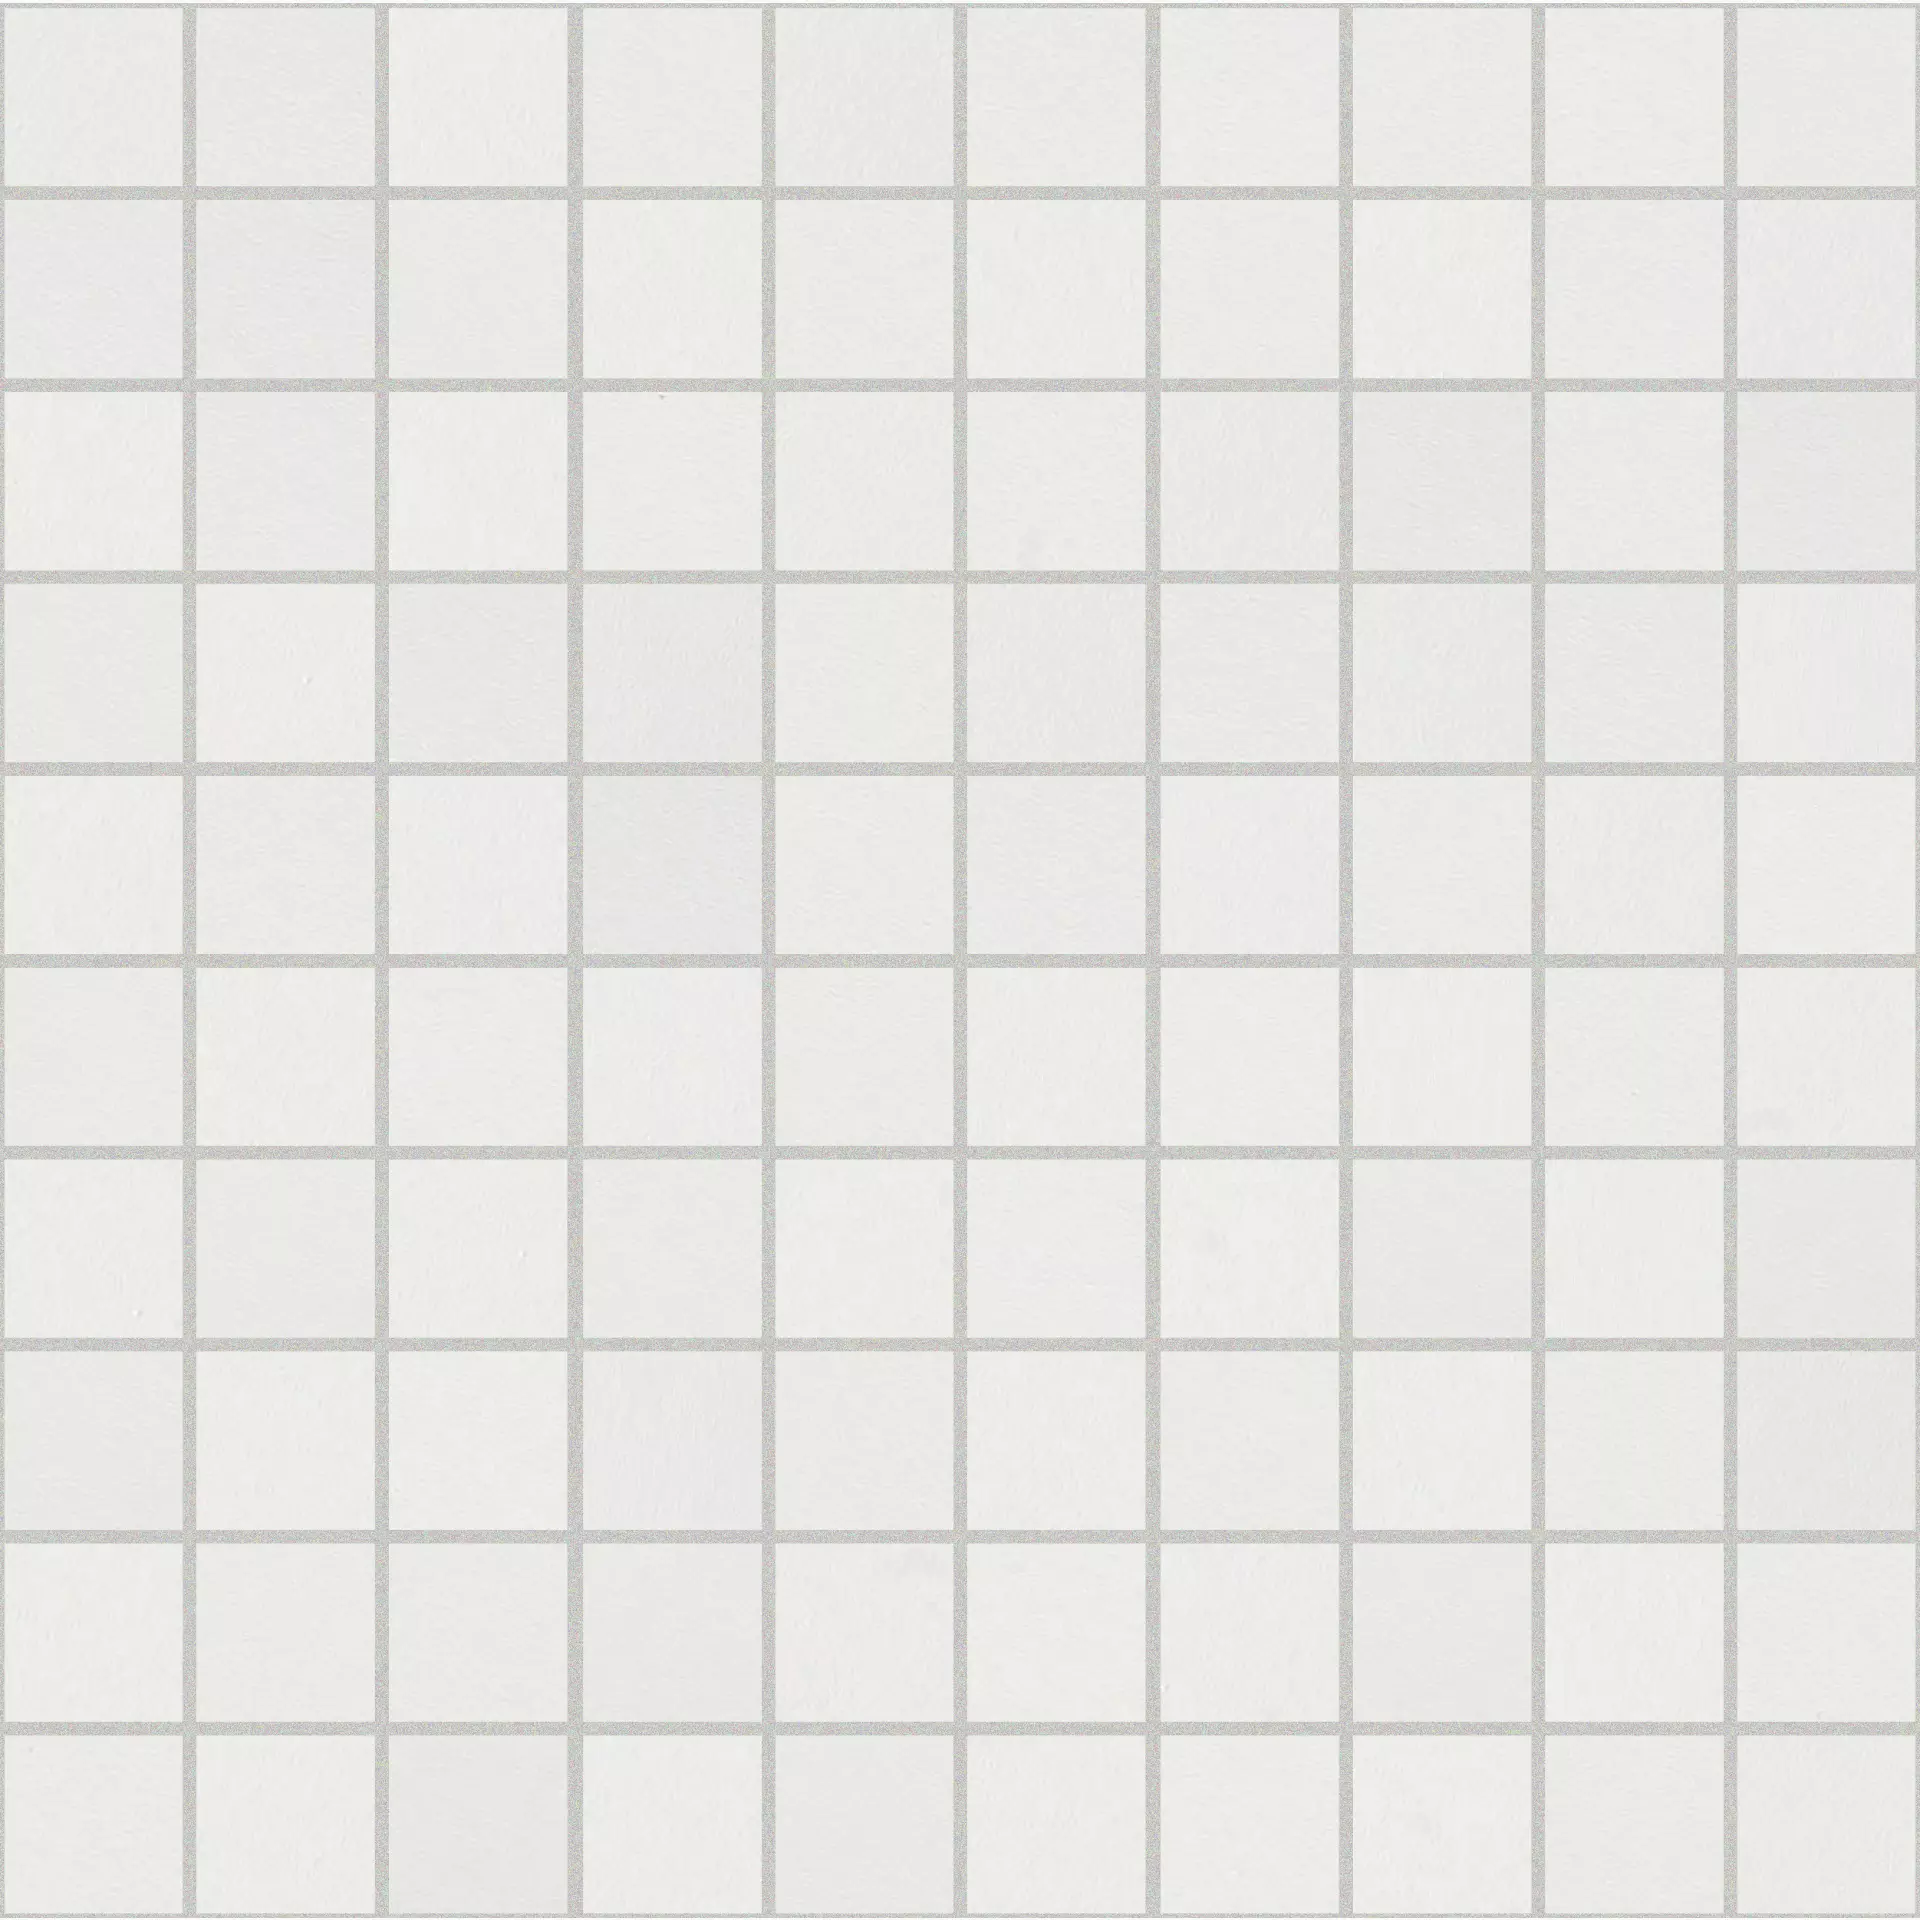 Florim B&W Marble White Levigato White 767376 geschliffen 3x3cm Mosaik 3x3 rektifiziert 9mm